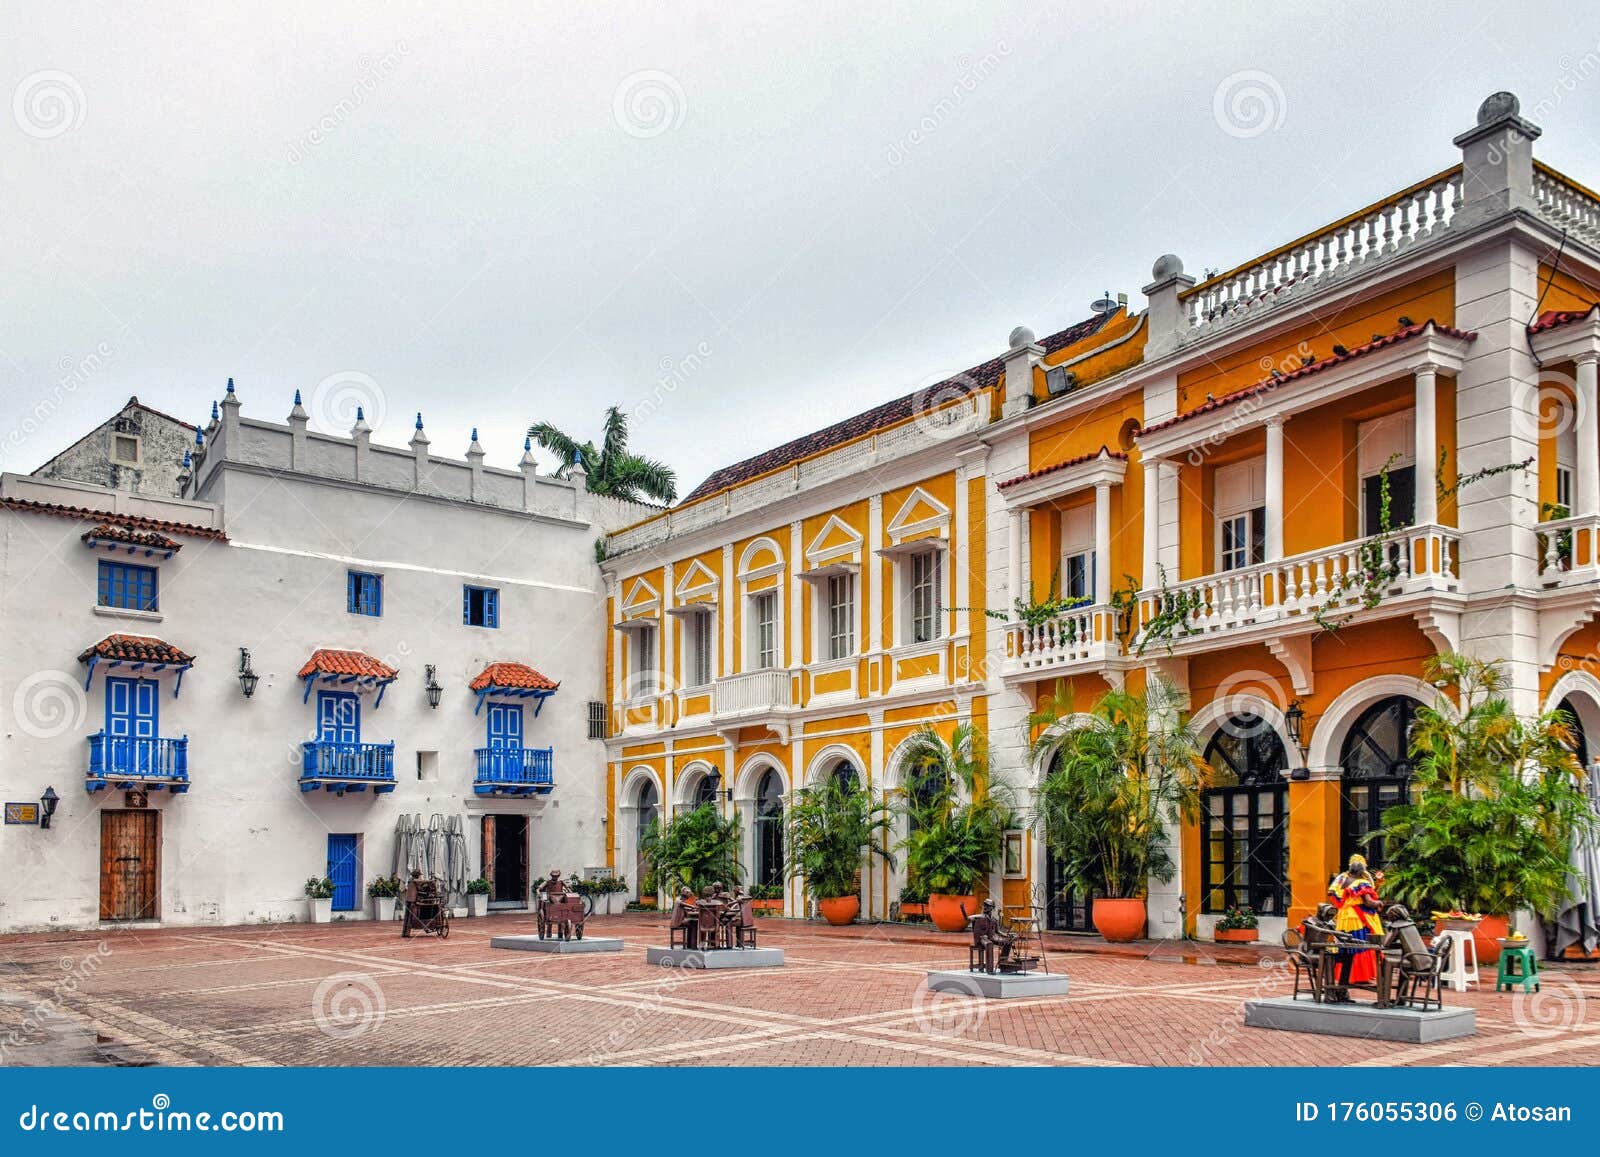 buildings at plaza de los coches, cartagena  bolivar, colombia